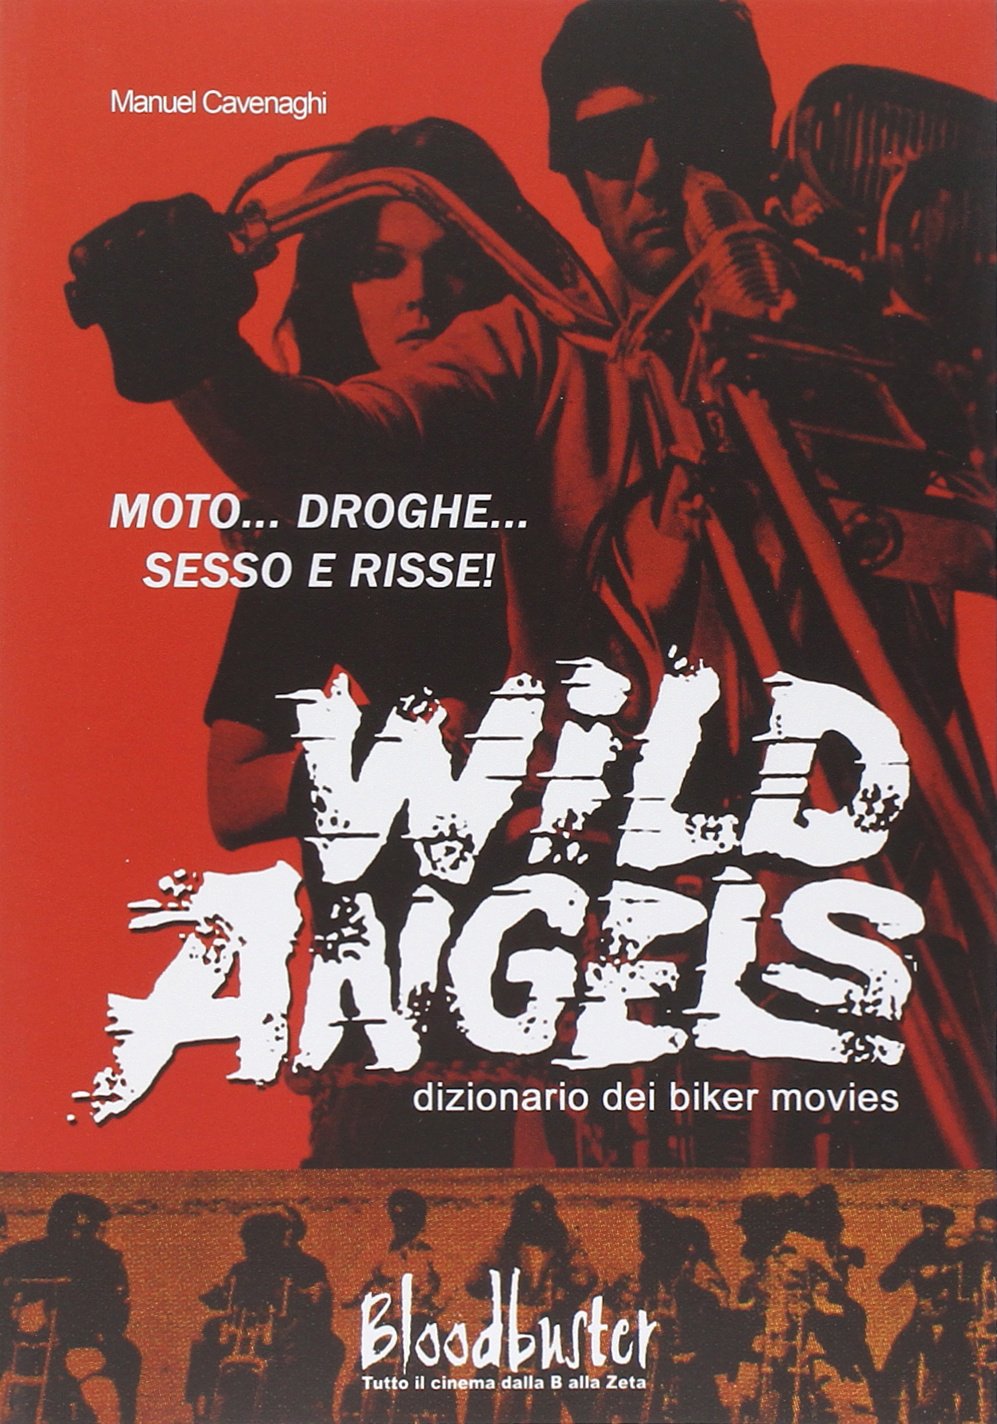 Libri Manuel Cavenaghi - Wild Angels. Dizionario Dei Biker Movies NUOVO SIGILLATO, EDIZIONE DEL 25/06/2014 SUBITO DISPONIBILE